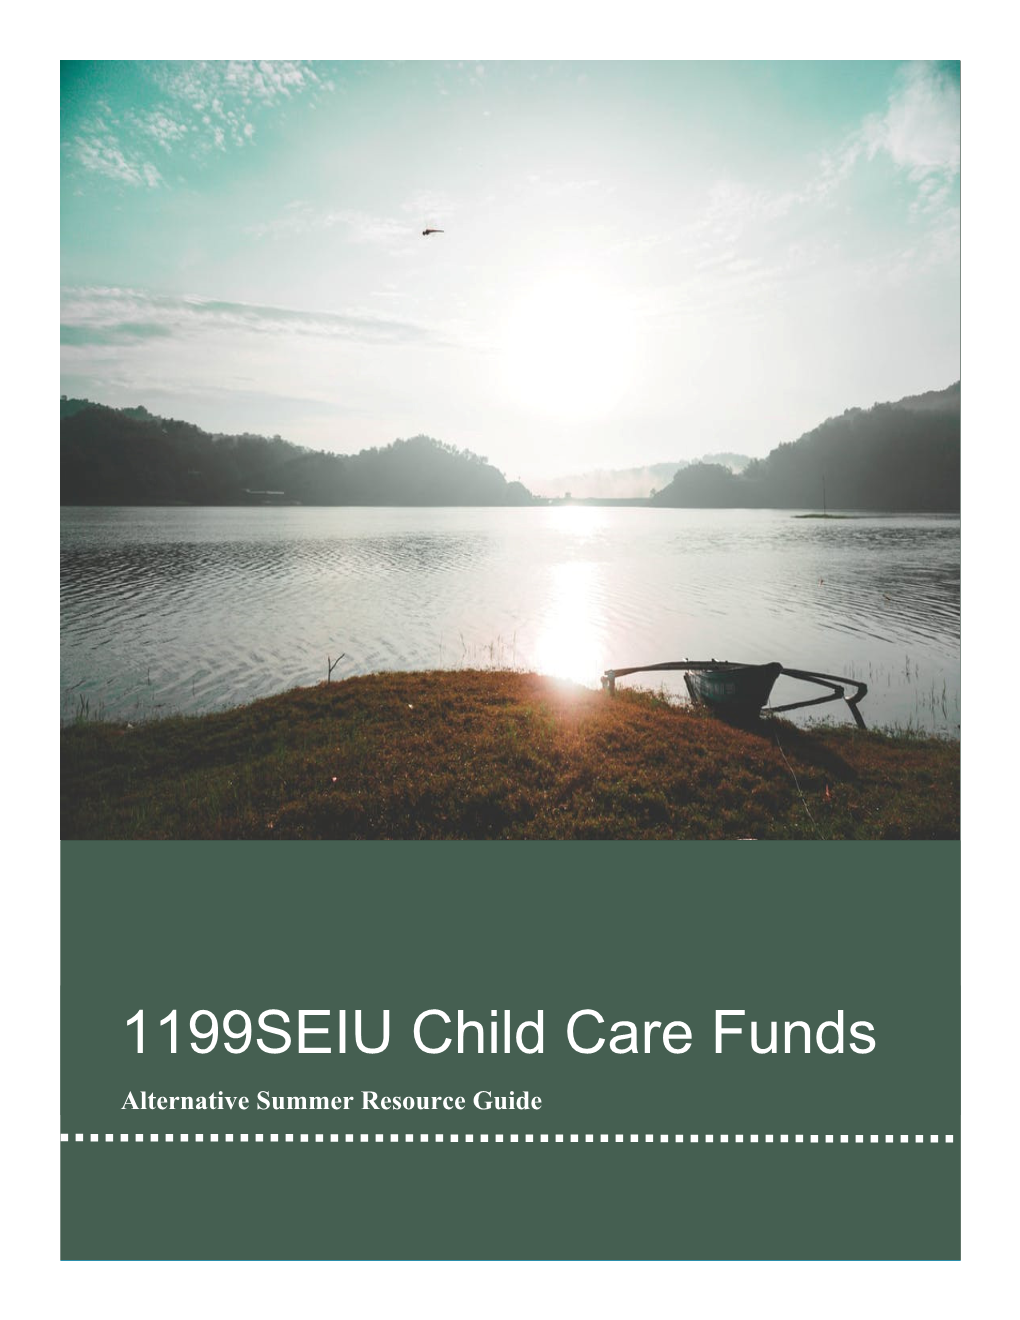 1199SEIU Child Care Funds Alternative Summer Resource Guide